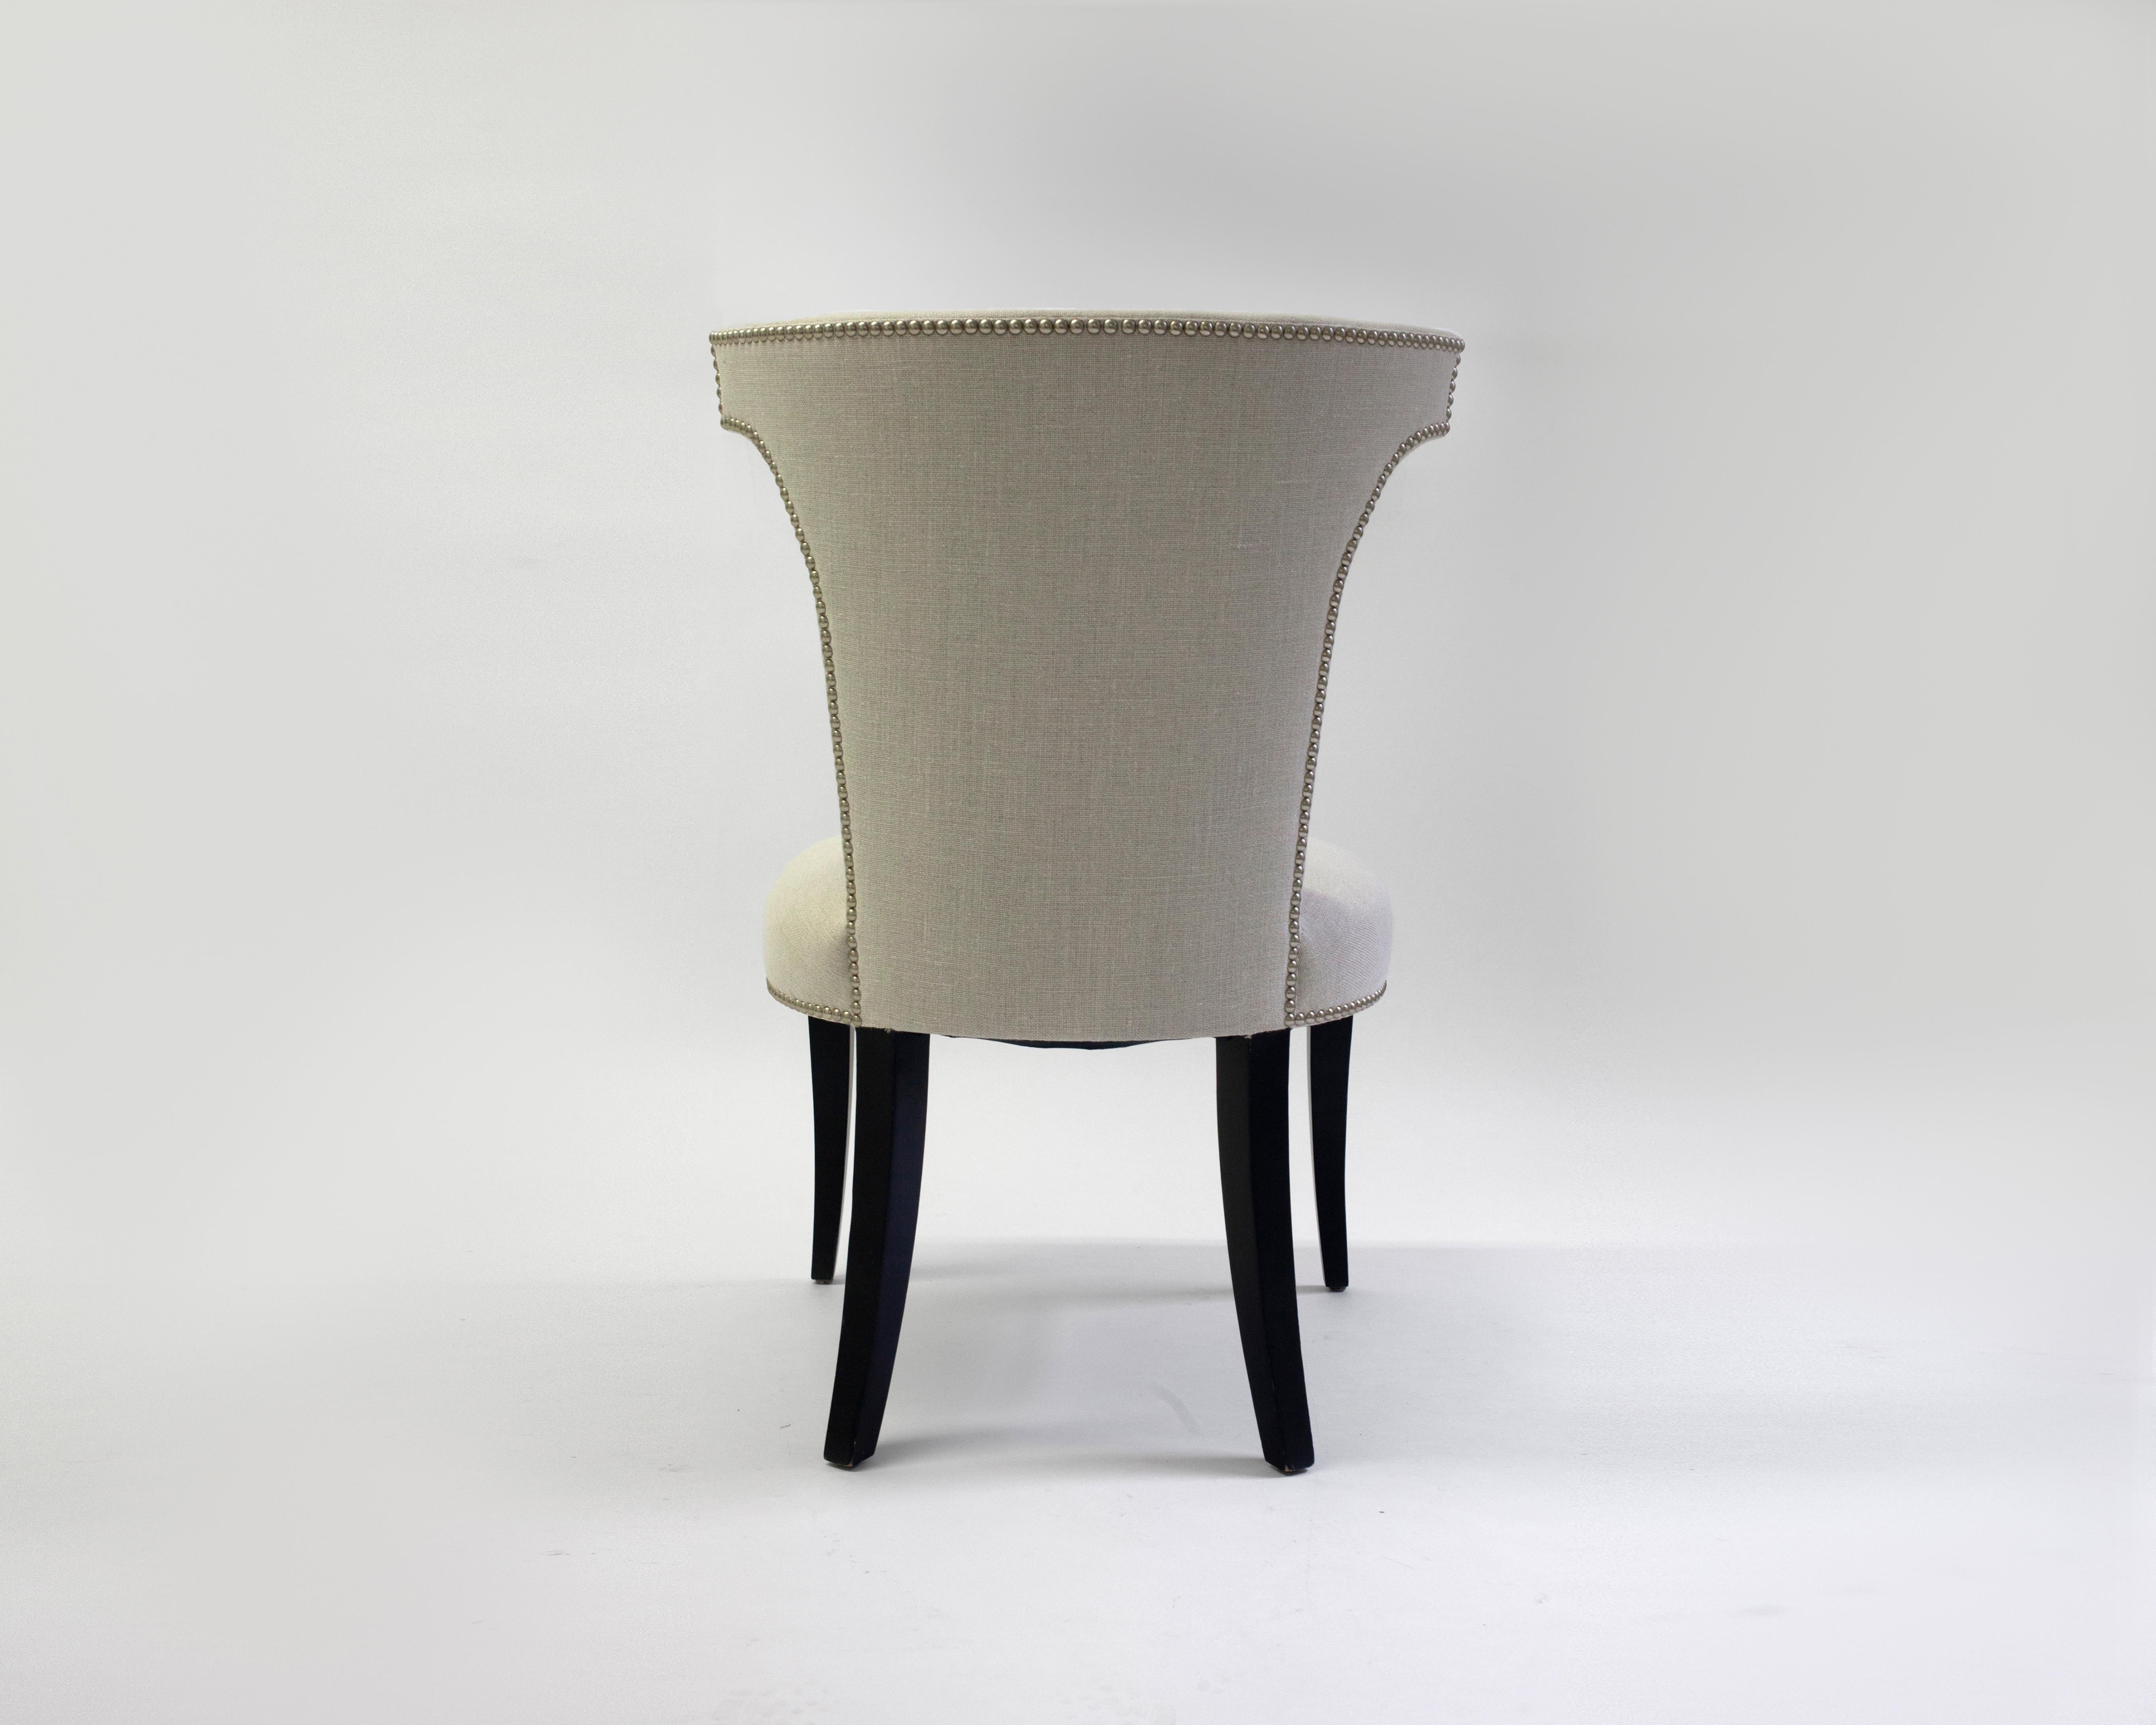 Der Menton-Stuhl ist ein wunderschön gestalteter Beistellstuhl in weißem Stoff mit selbst bezogenen Knöpfen an der Innenseite der Rückenlehne - Nagelkopfverzierungen unterstreichen die Anmut und die Linien dieses Stuhls - auf Holzbeinen in mittlerem